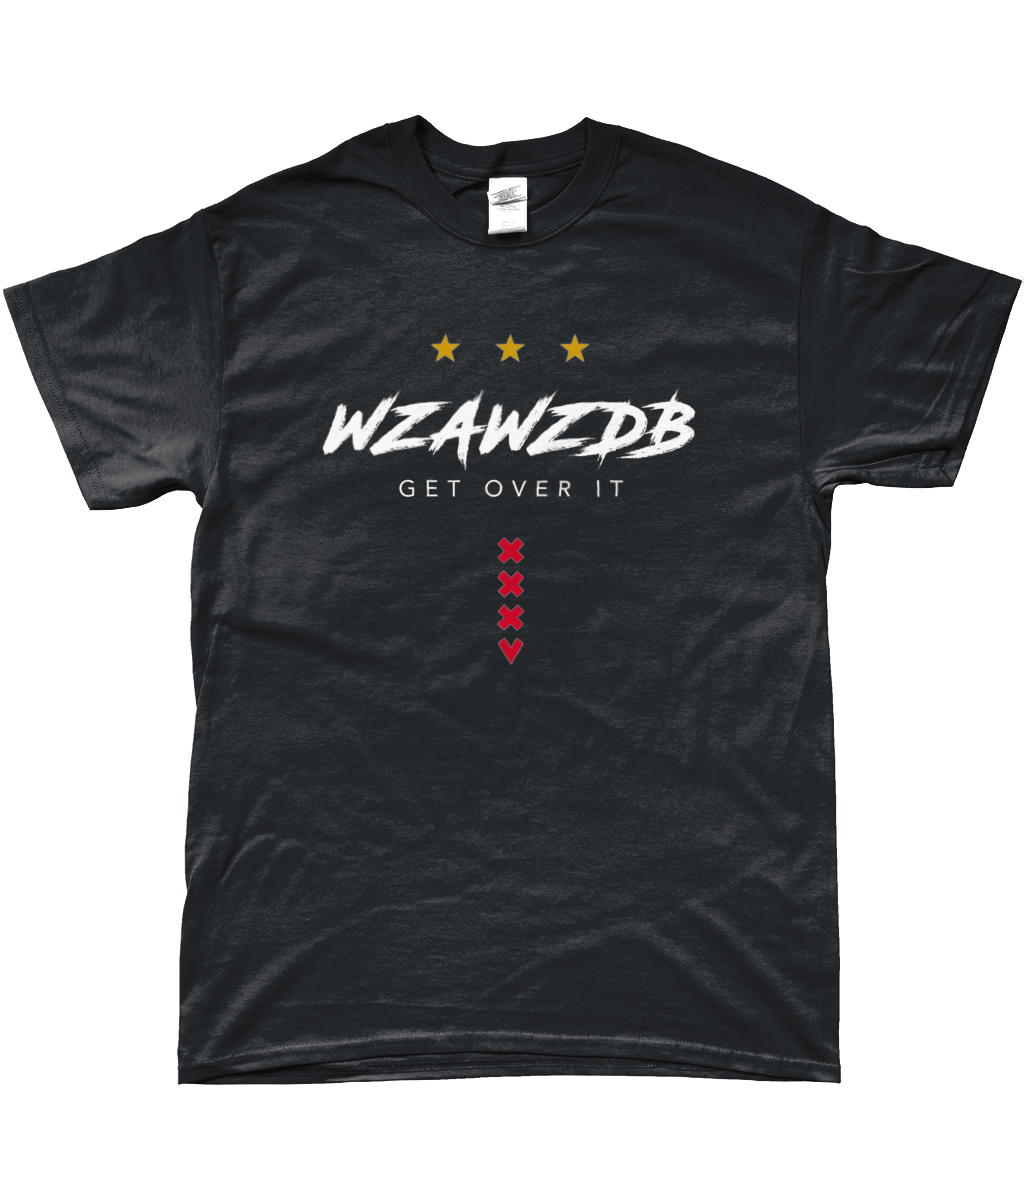 Ajax - WZAWZDB T-shirt